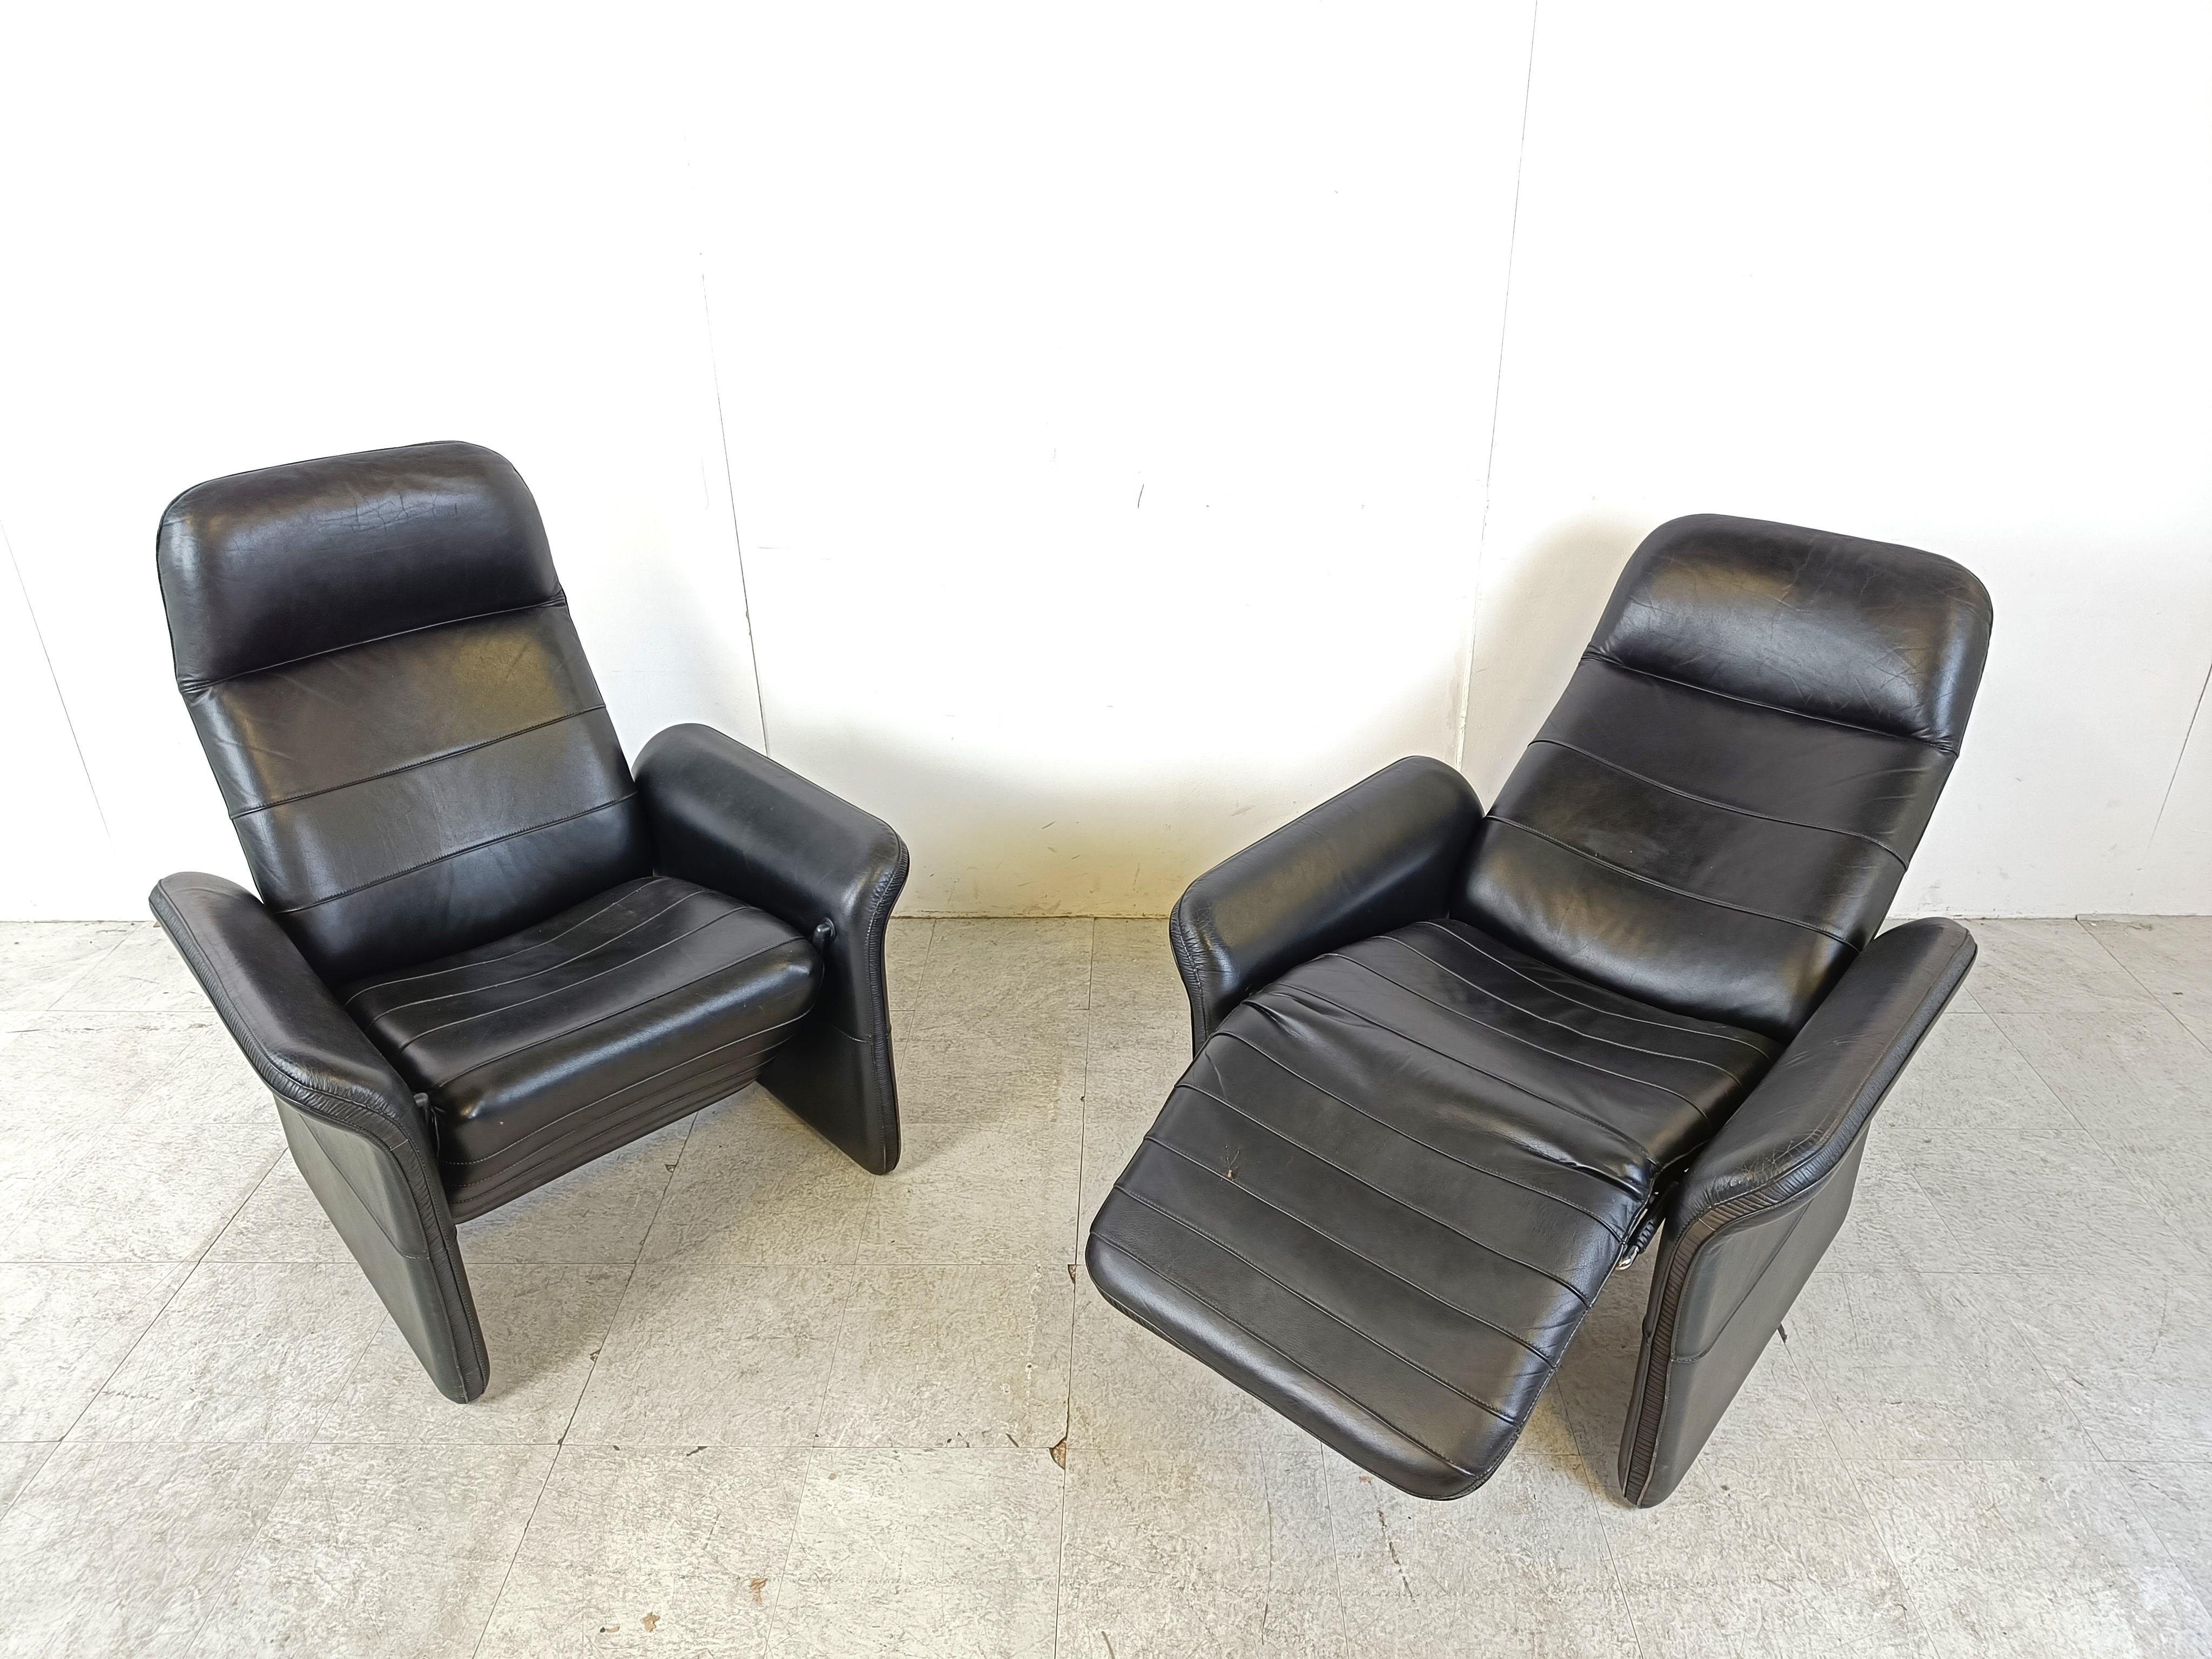 Moderne Ledersessel aus der Mitte des Jahrhunderts in der Art des DS50 von Desede.

Sehr bequeme Stühle mit einem zeitlosen Design.

Sehr guter Zustand

1970er Jahre - Schweiz

Abmessungen:
Höhe: 100cm/39.37